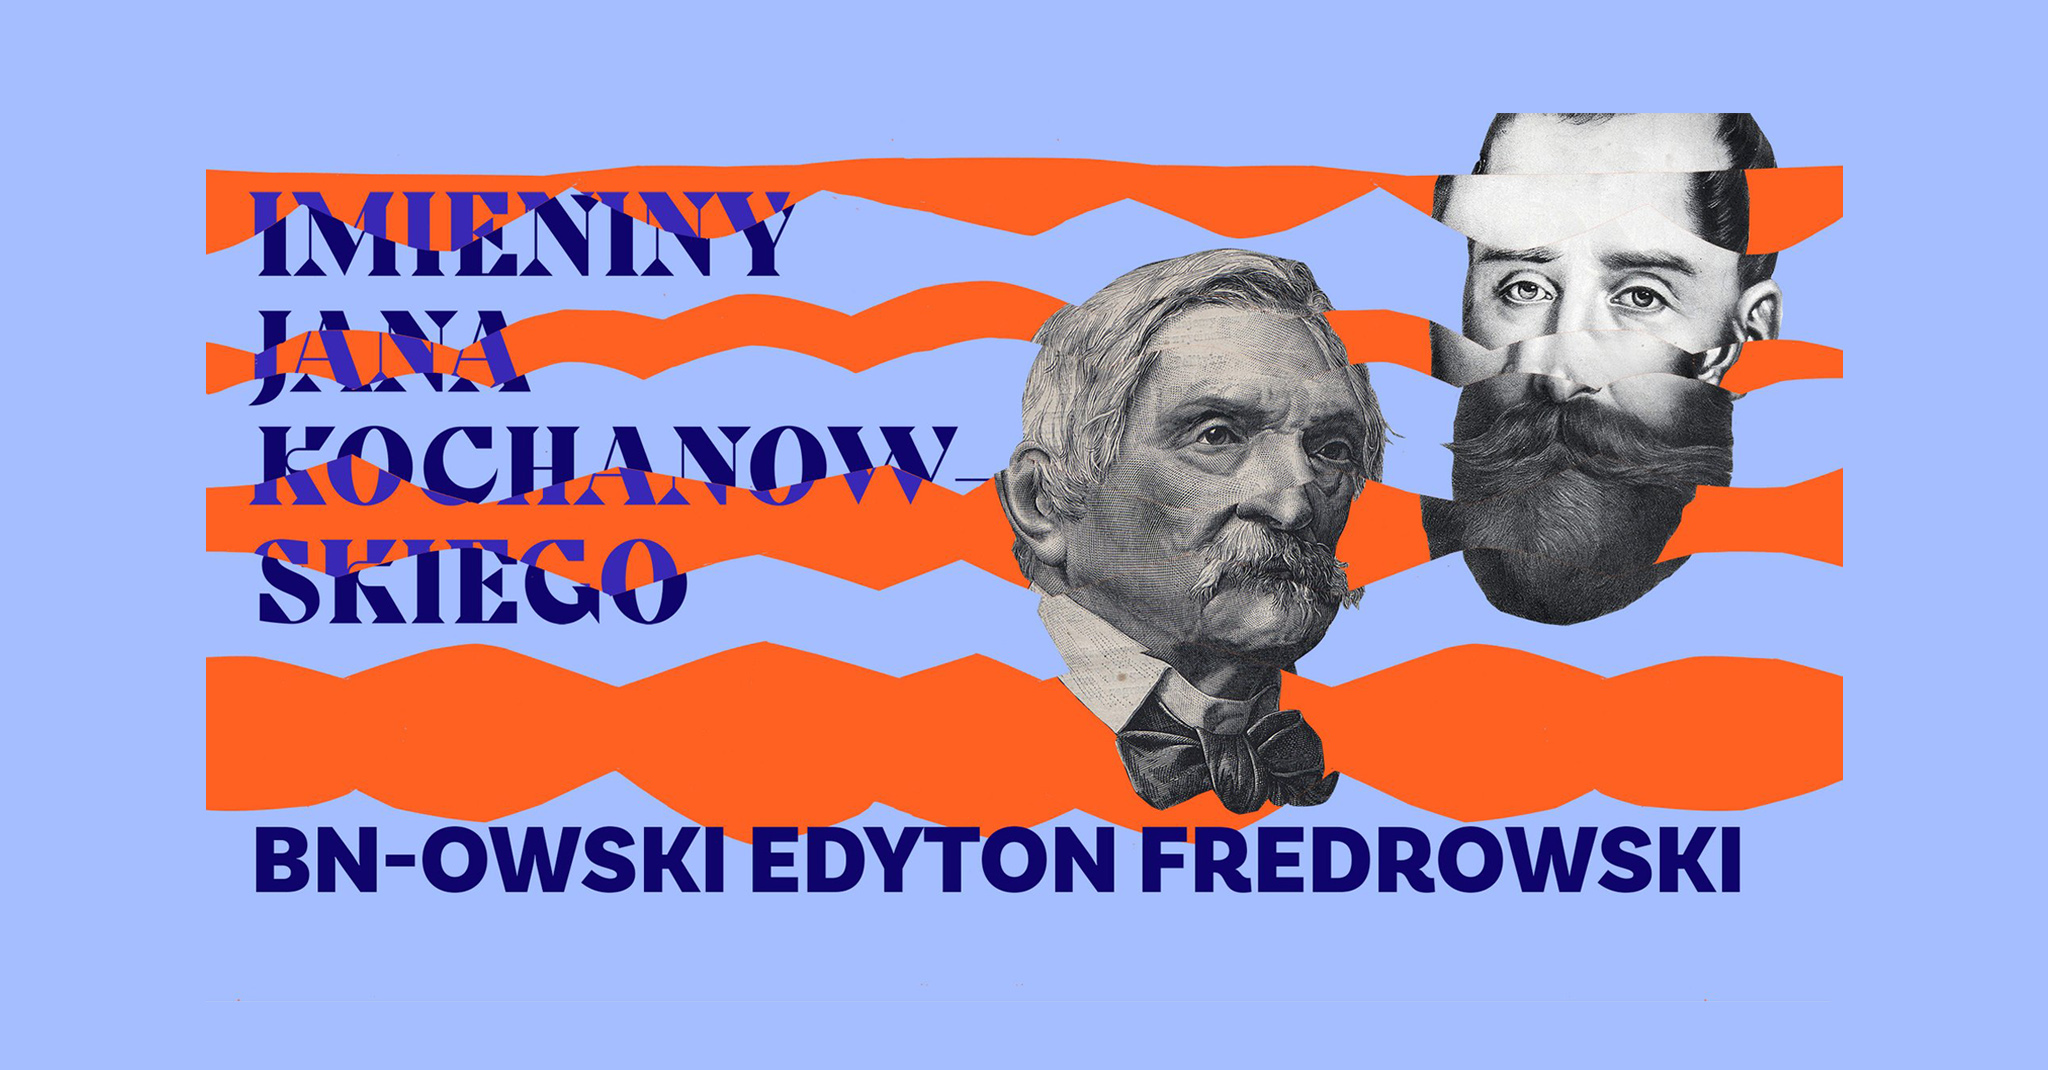 BN-owski edyton fredrowski